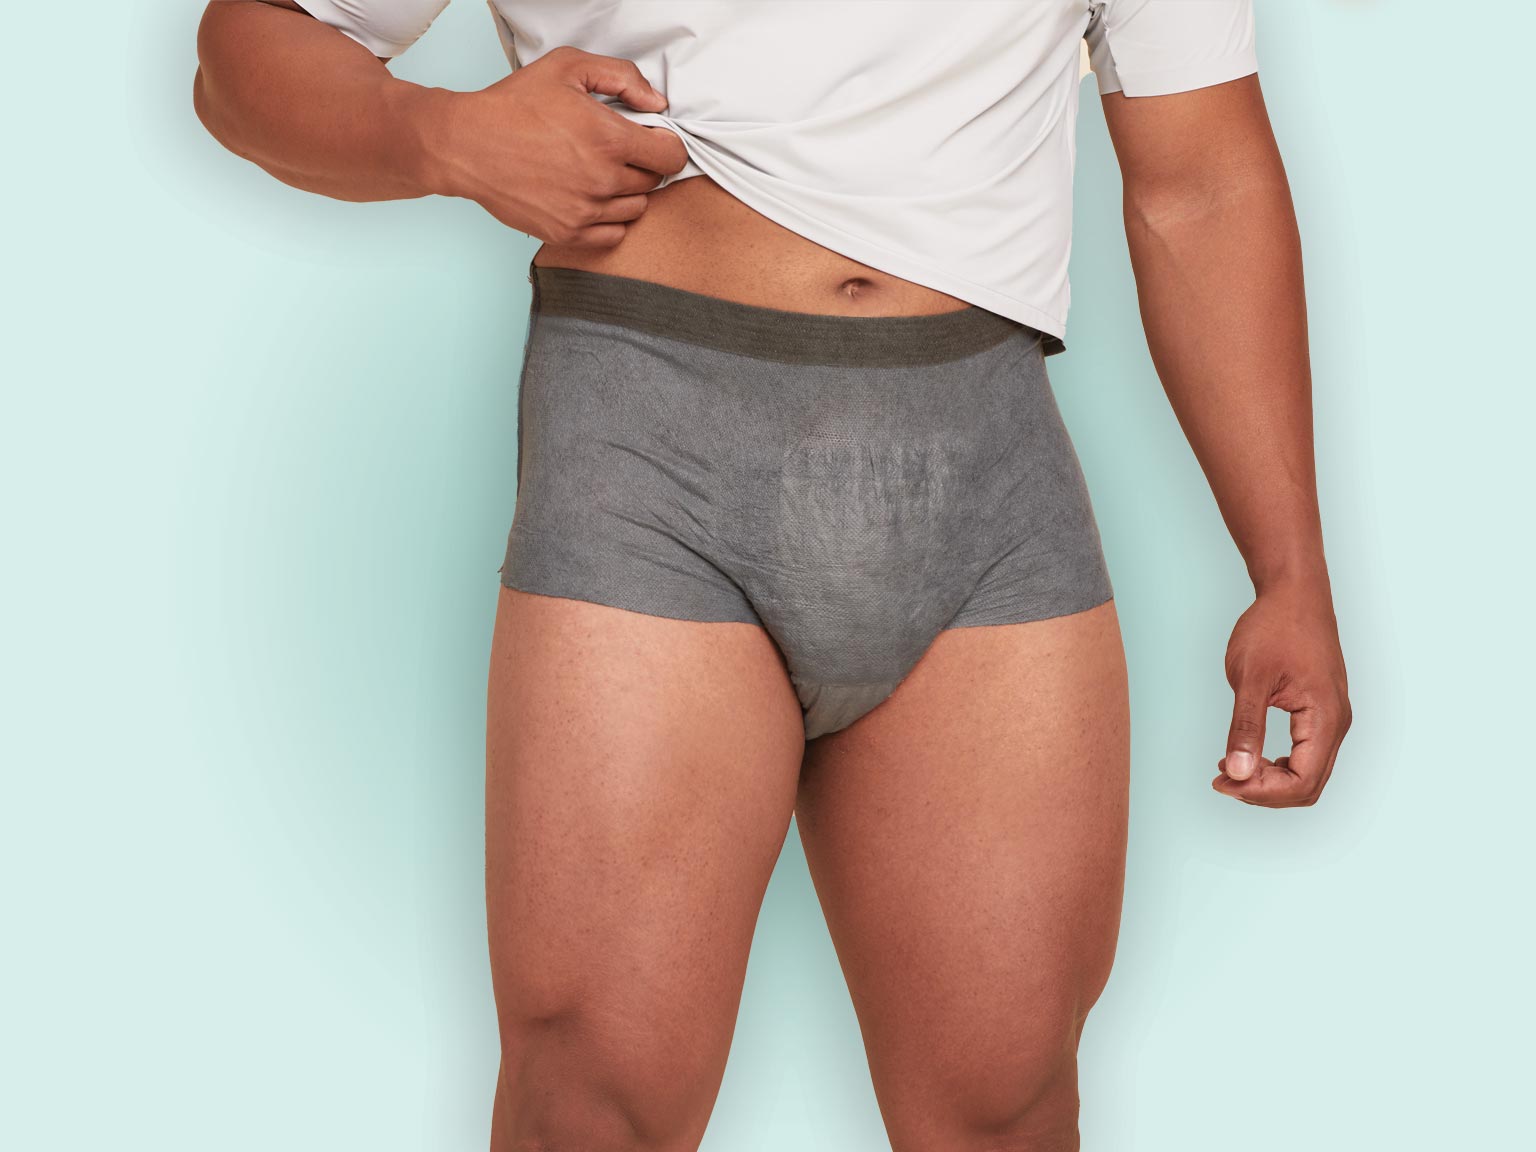  Rael Bundle - Disposable Underwear (Size S-M, 10 Count